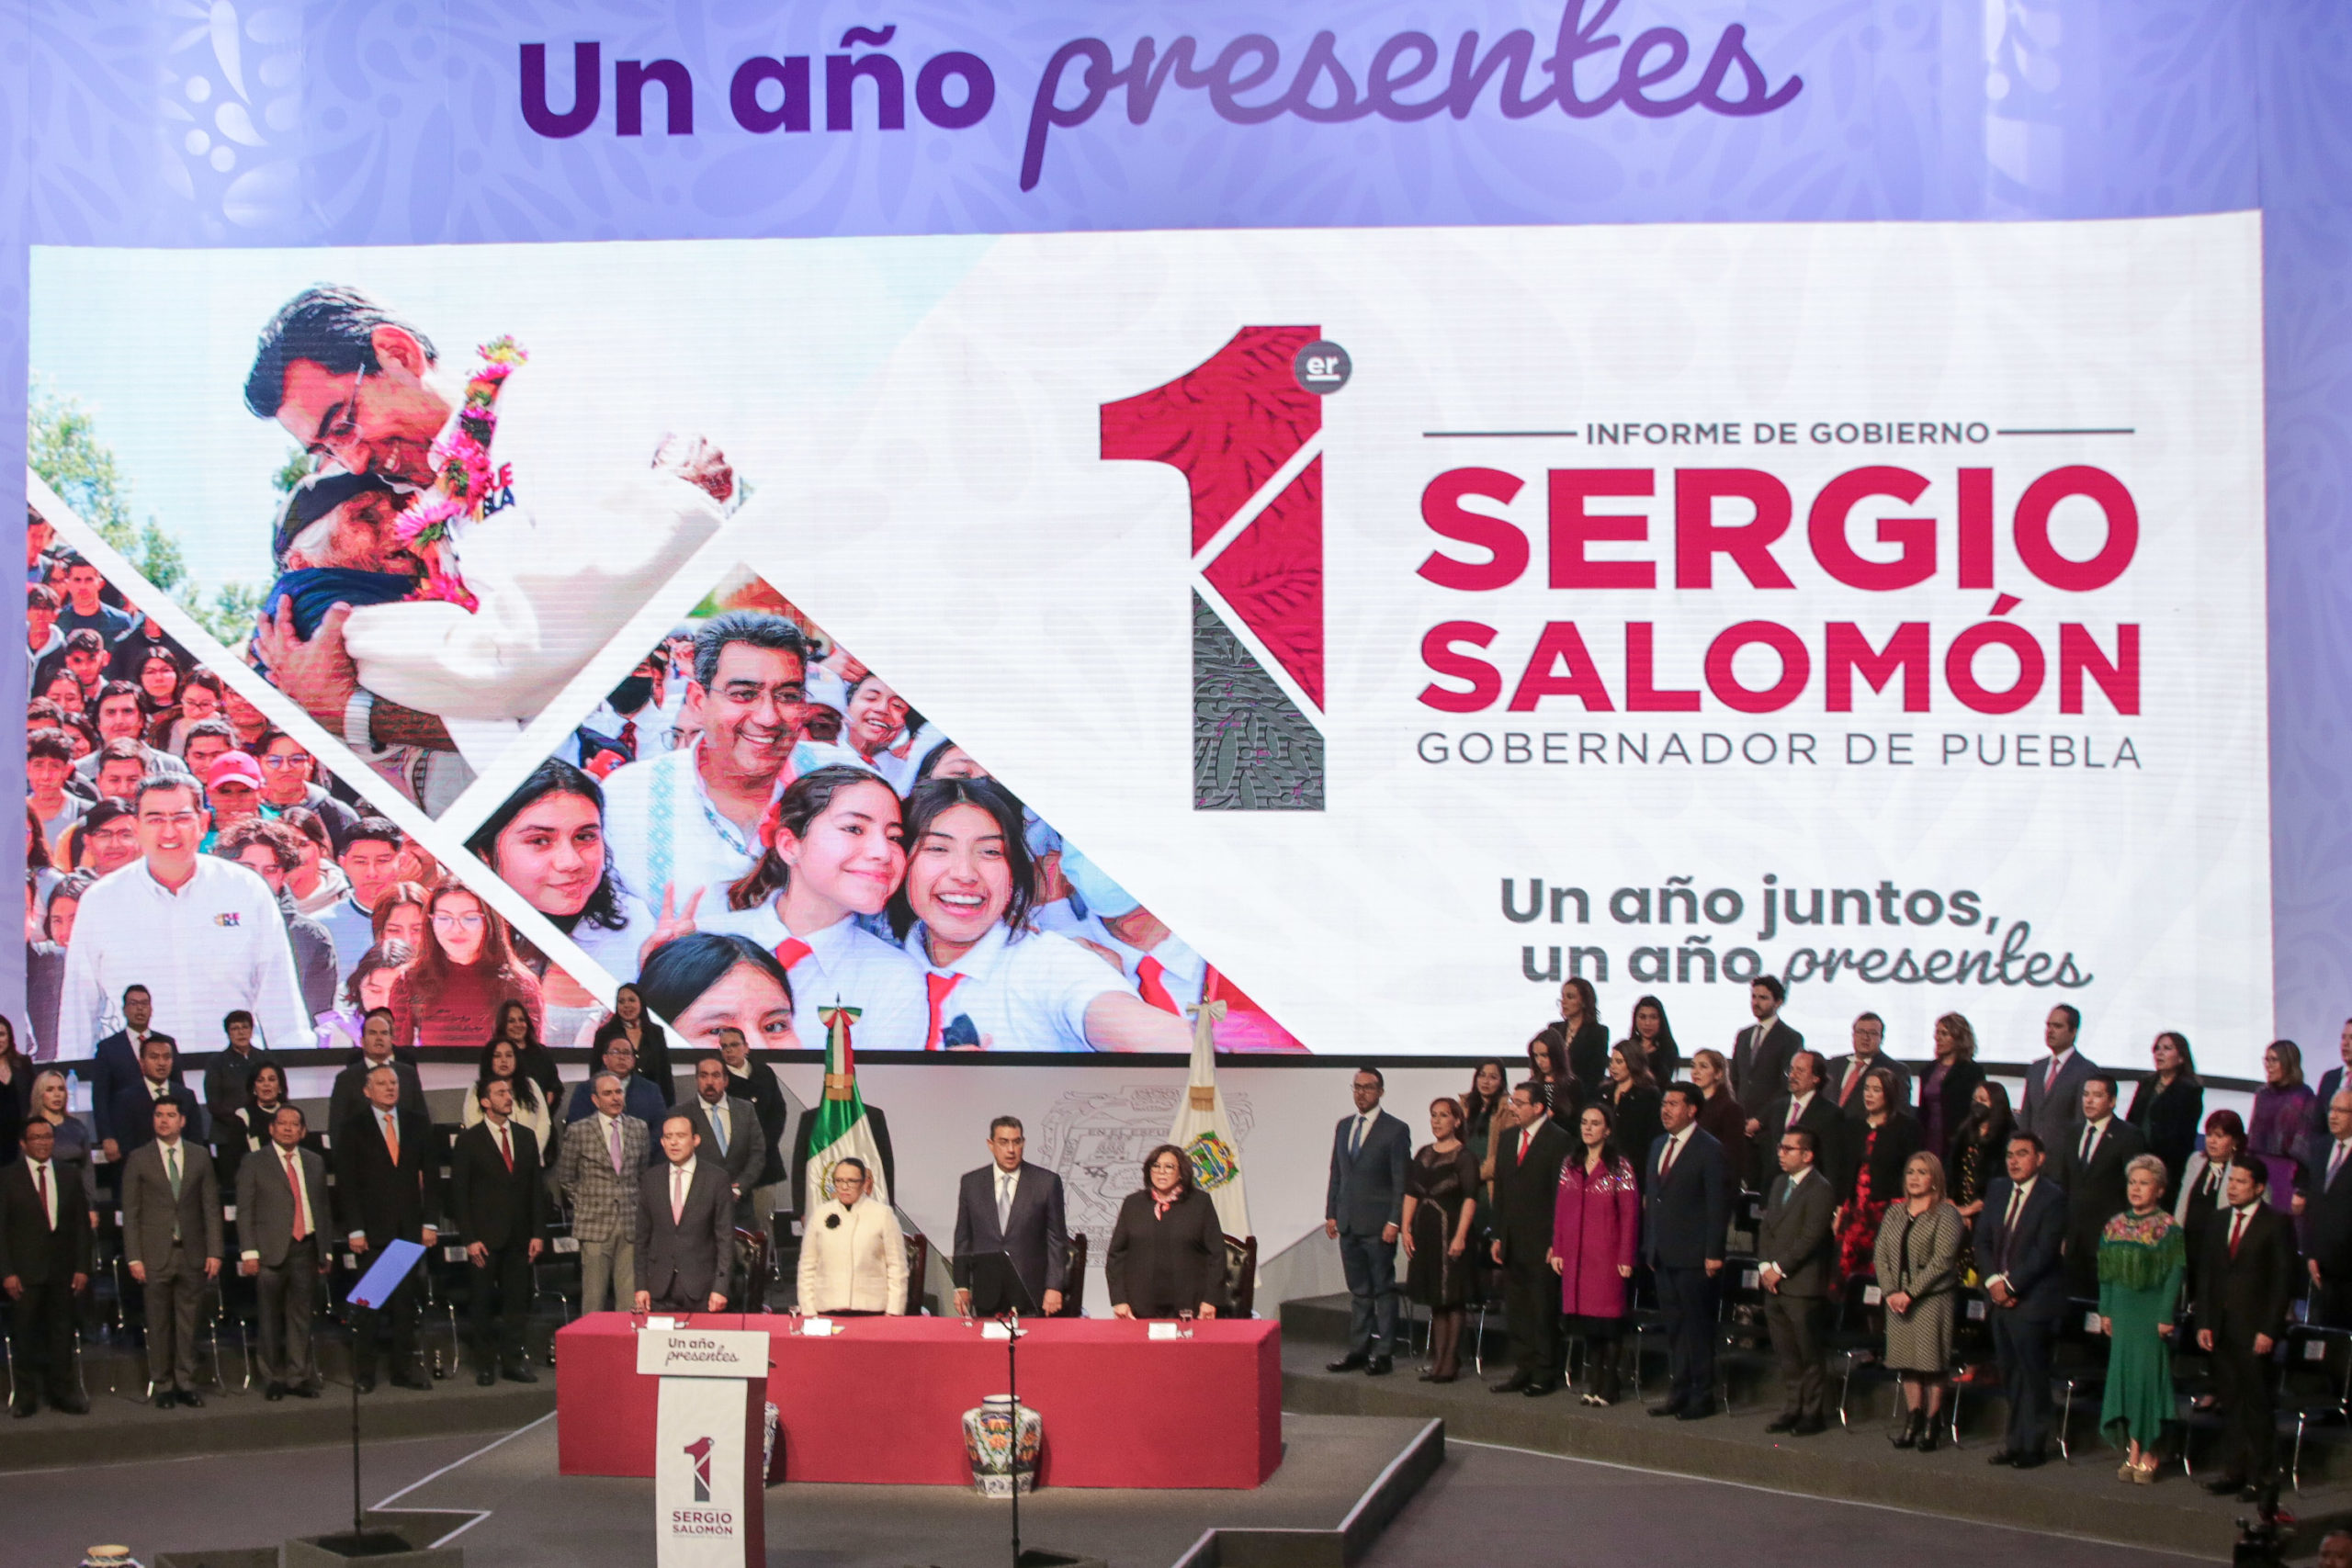 Sergio Salomón Céspedes